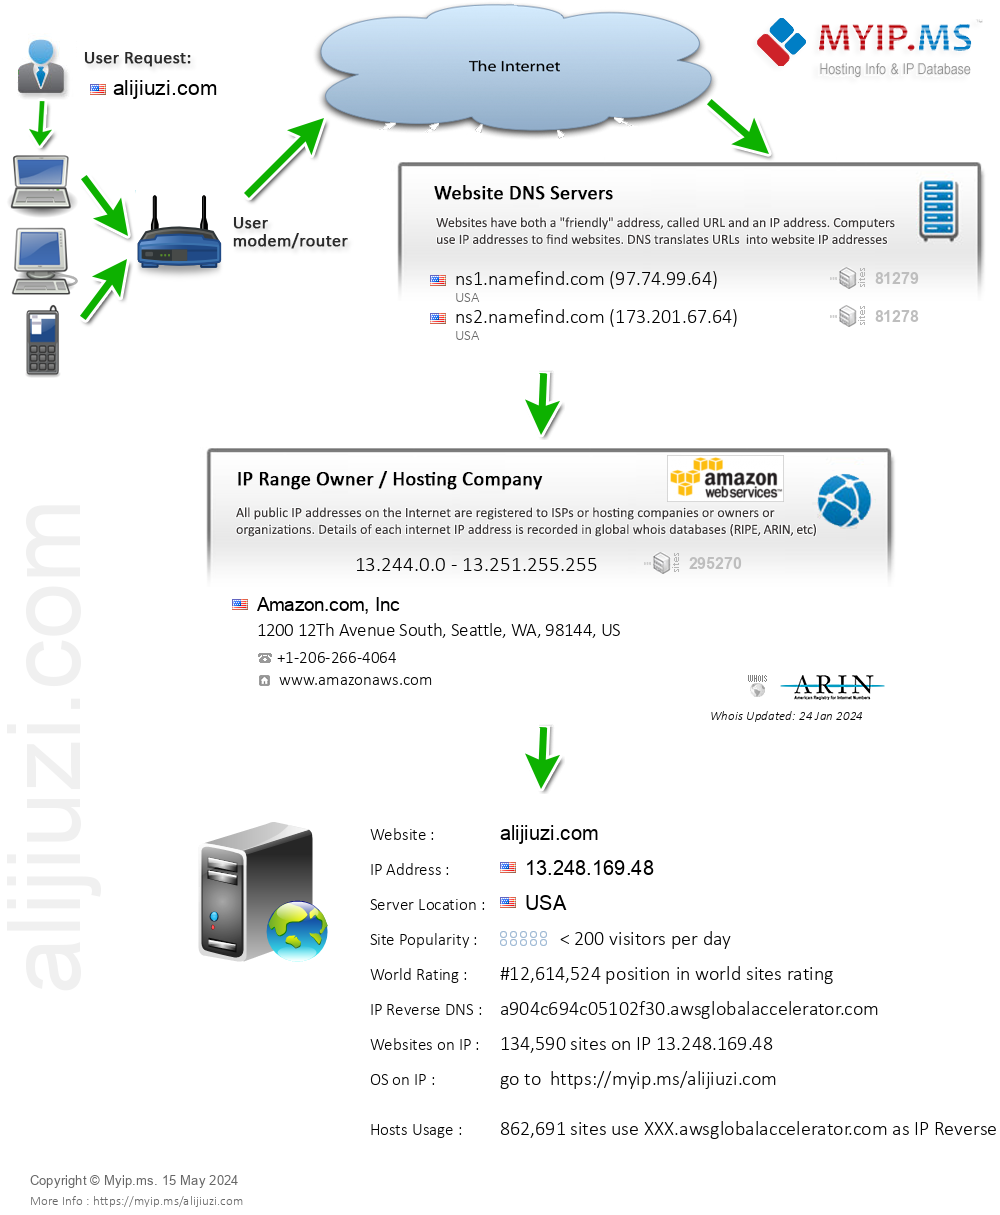 Alijiuzi.com - Website Hosting Visual IP Diagram